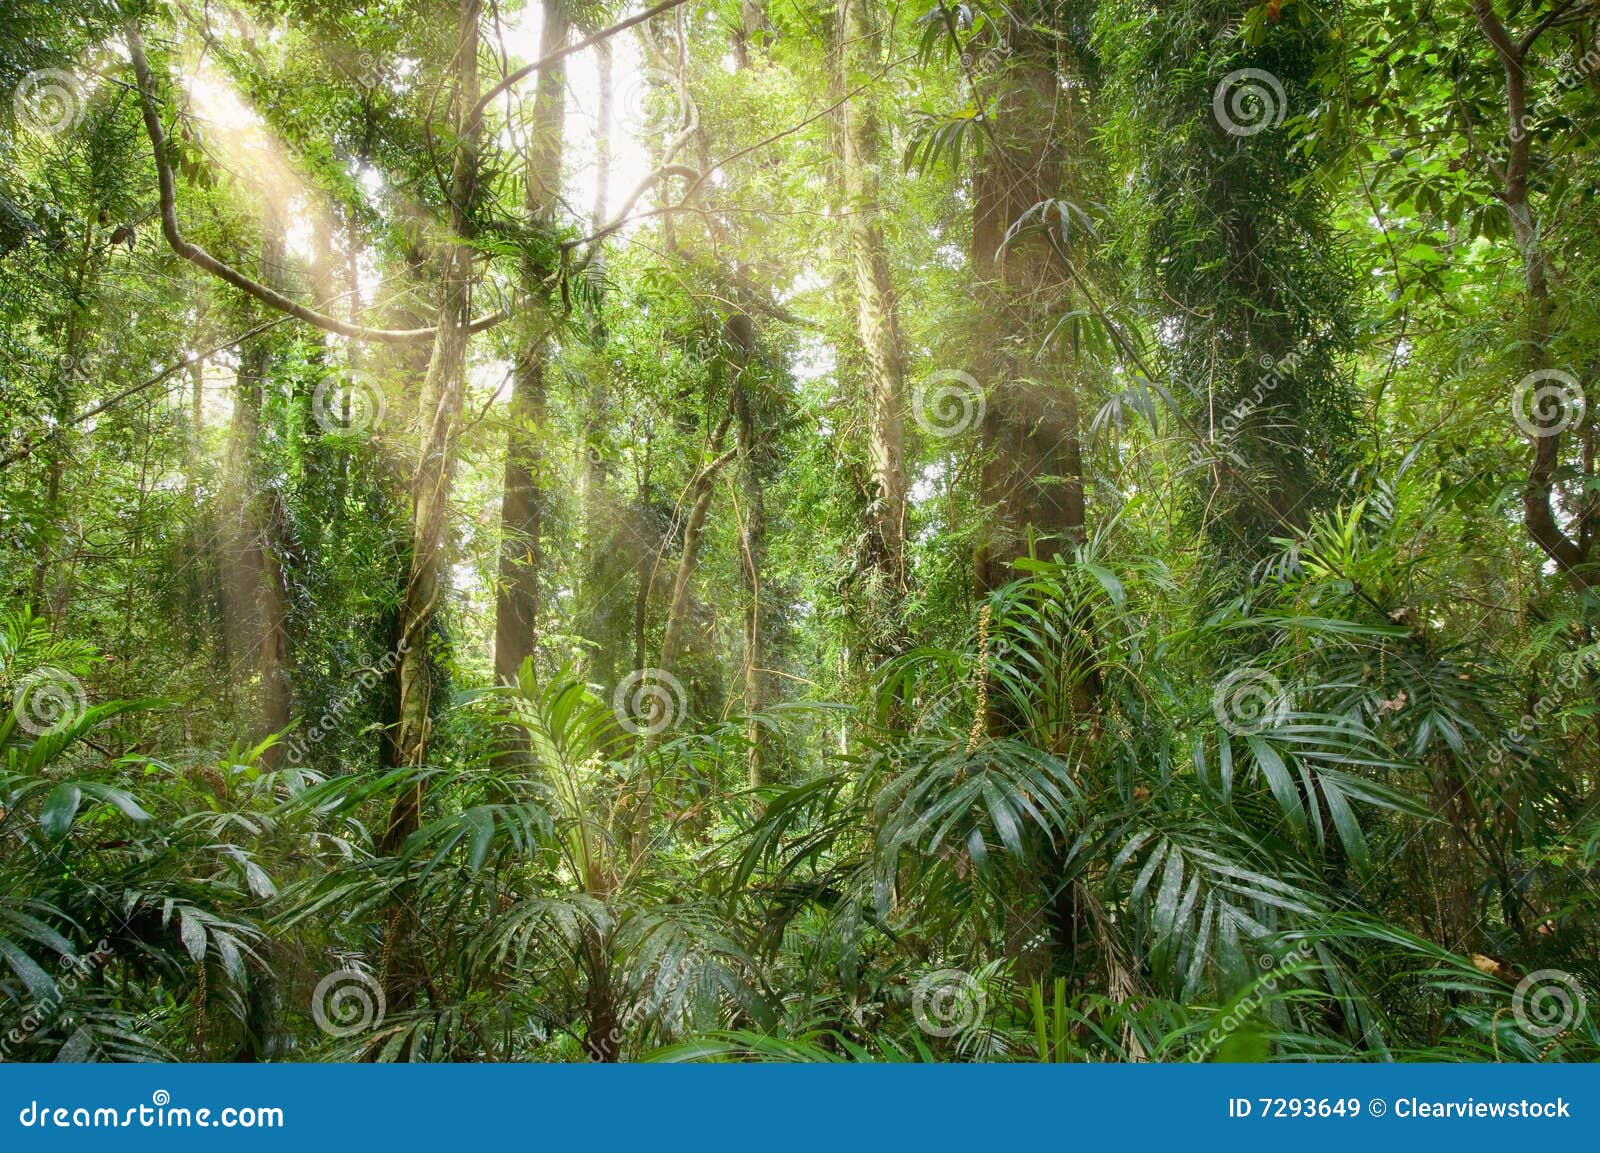 light in the rainforest